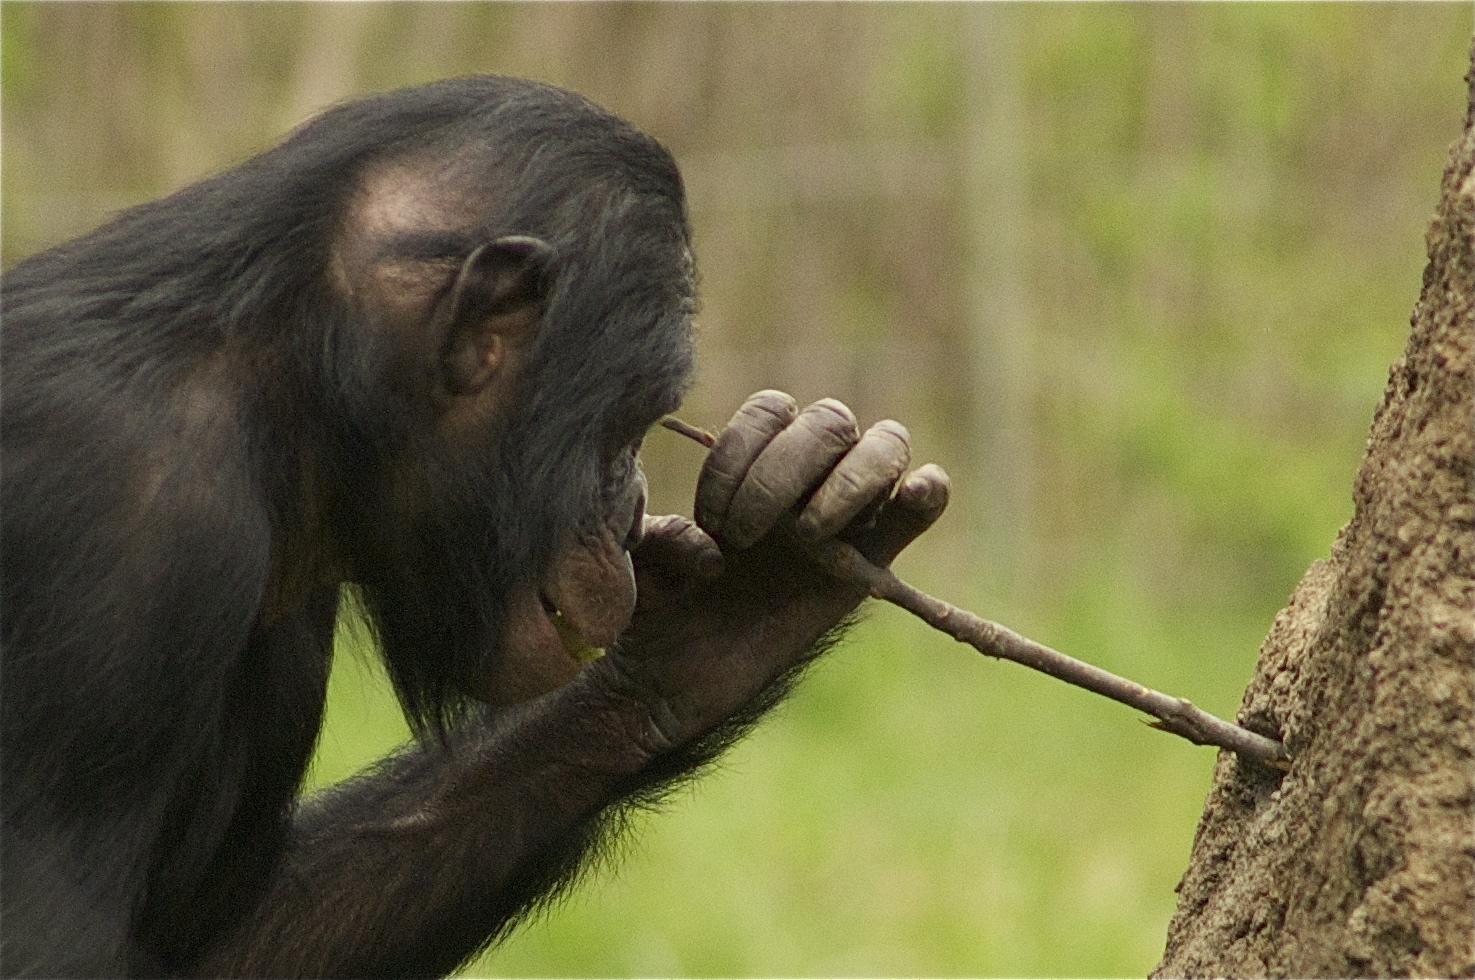 Деятельность человекообразных обезьян. Шимпанзе бонобо. Примат с палкой. Обезьяна с палкой. Орудия труда шимпанзе.